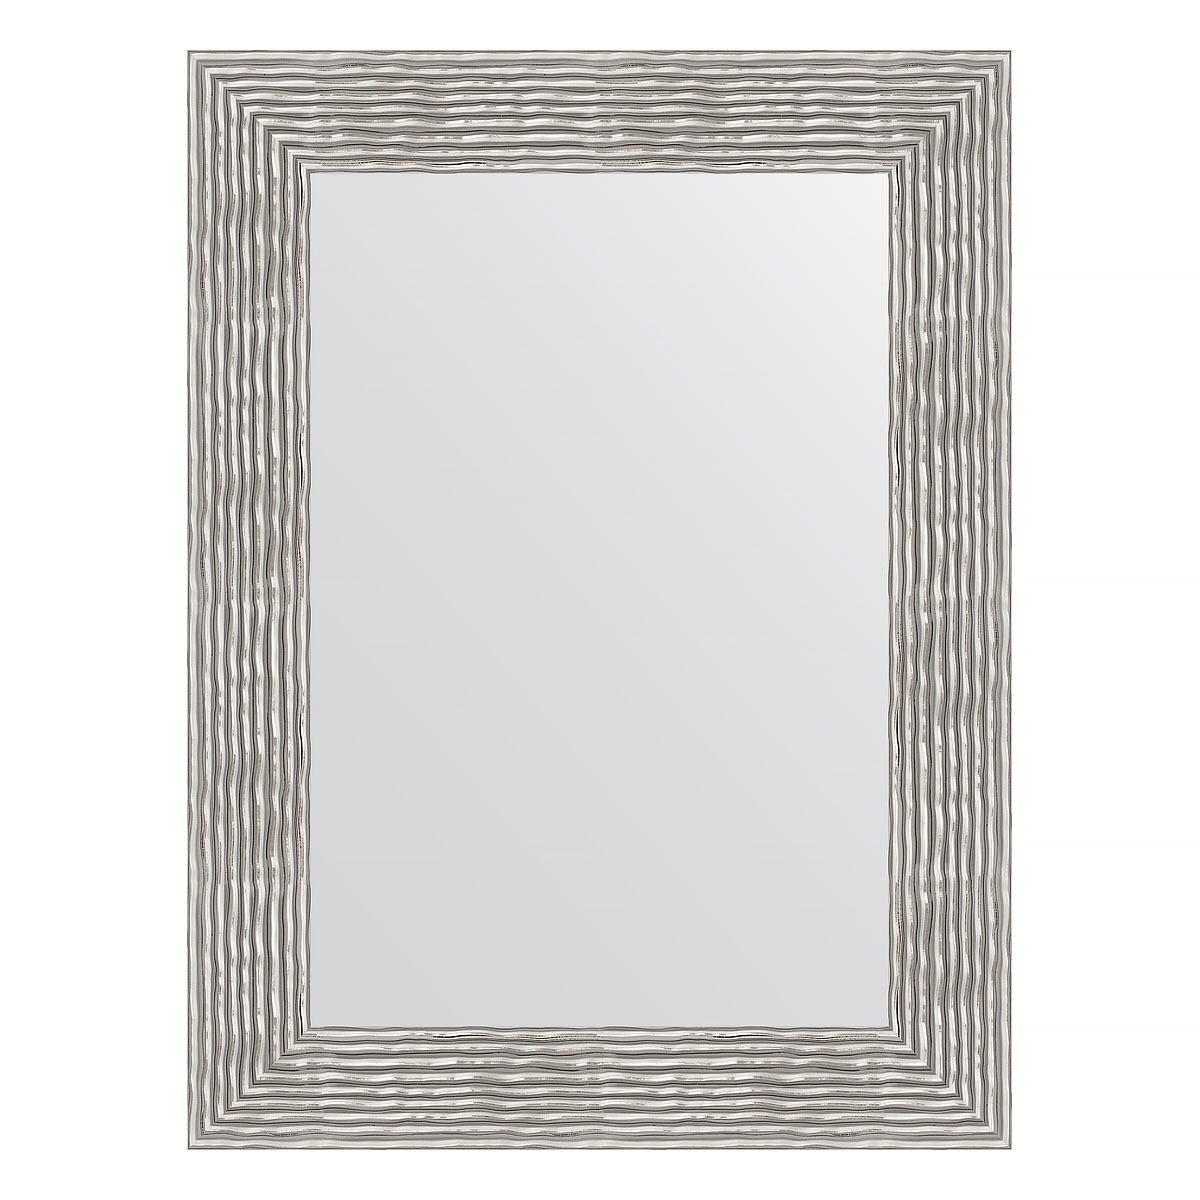 Зеркало в багетной раме Evoform волна хром 90 мм 60х80 см